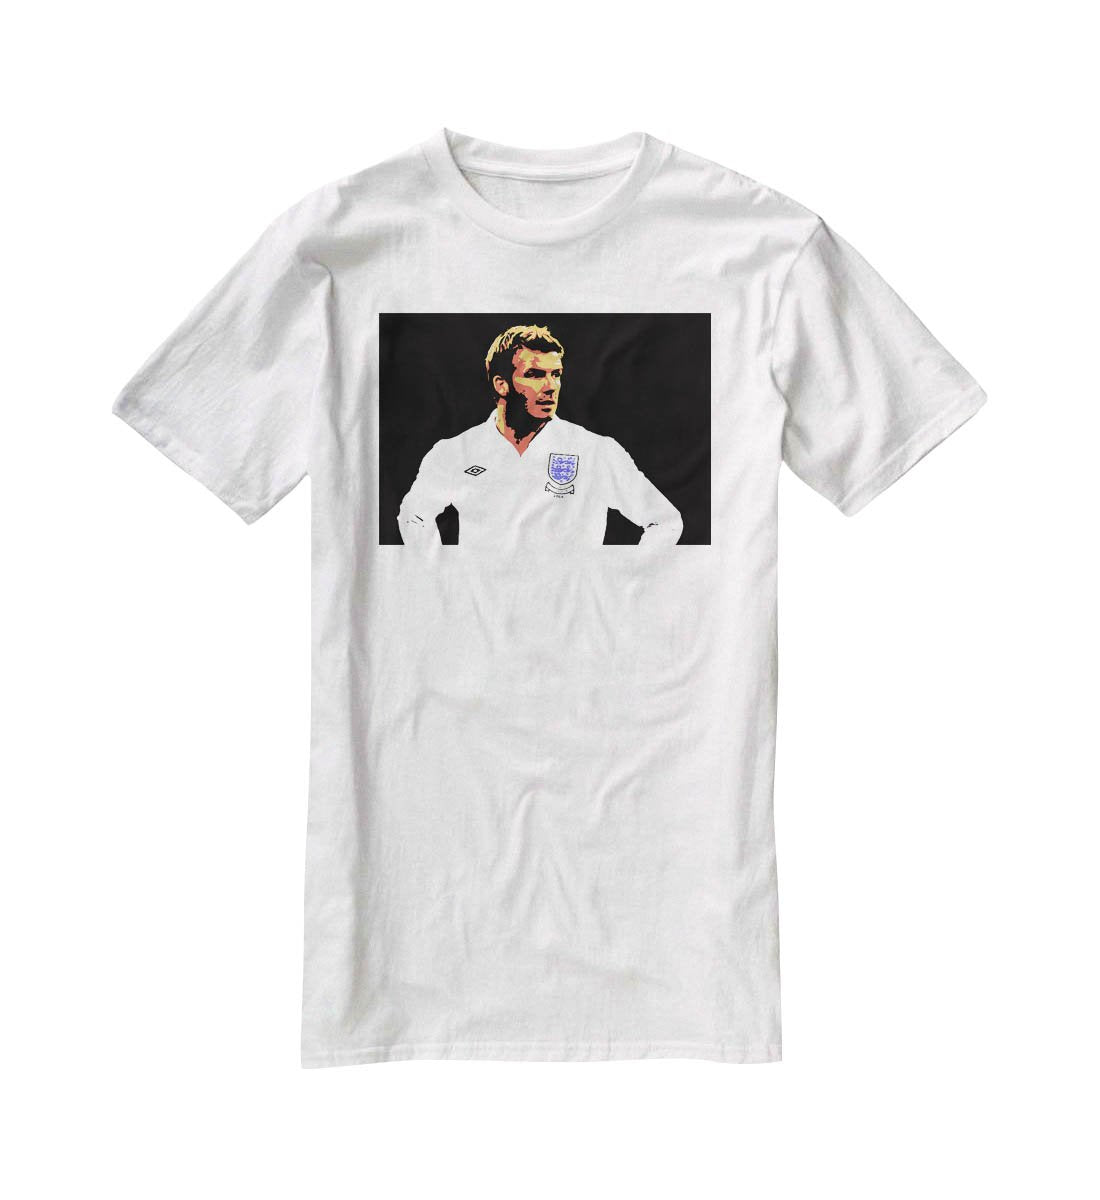 David Beckham Pop Art T-Shirt - Canvas Art Rocks - 5